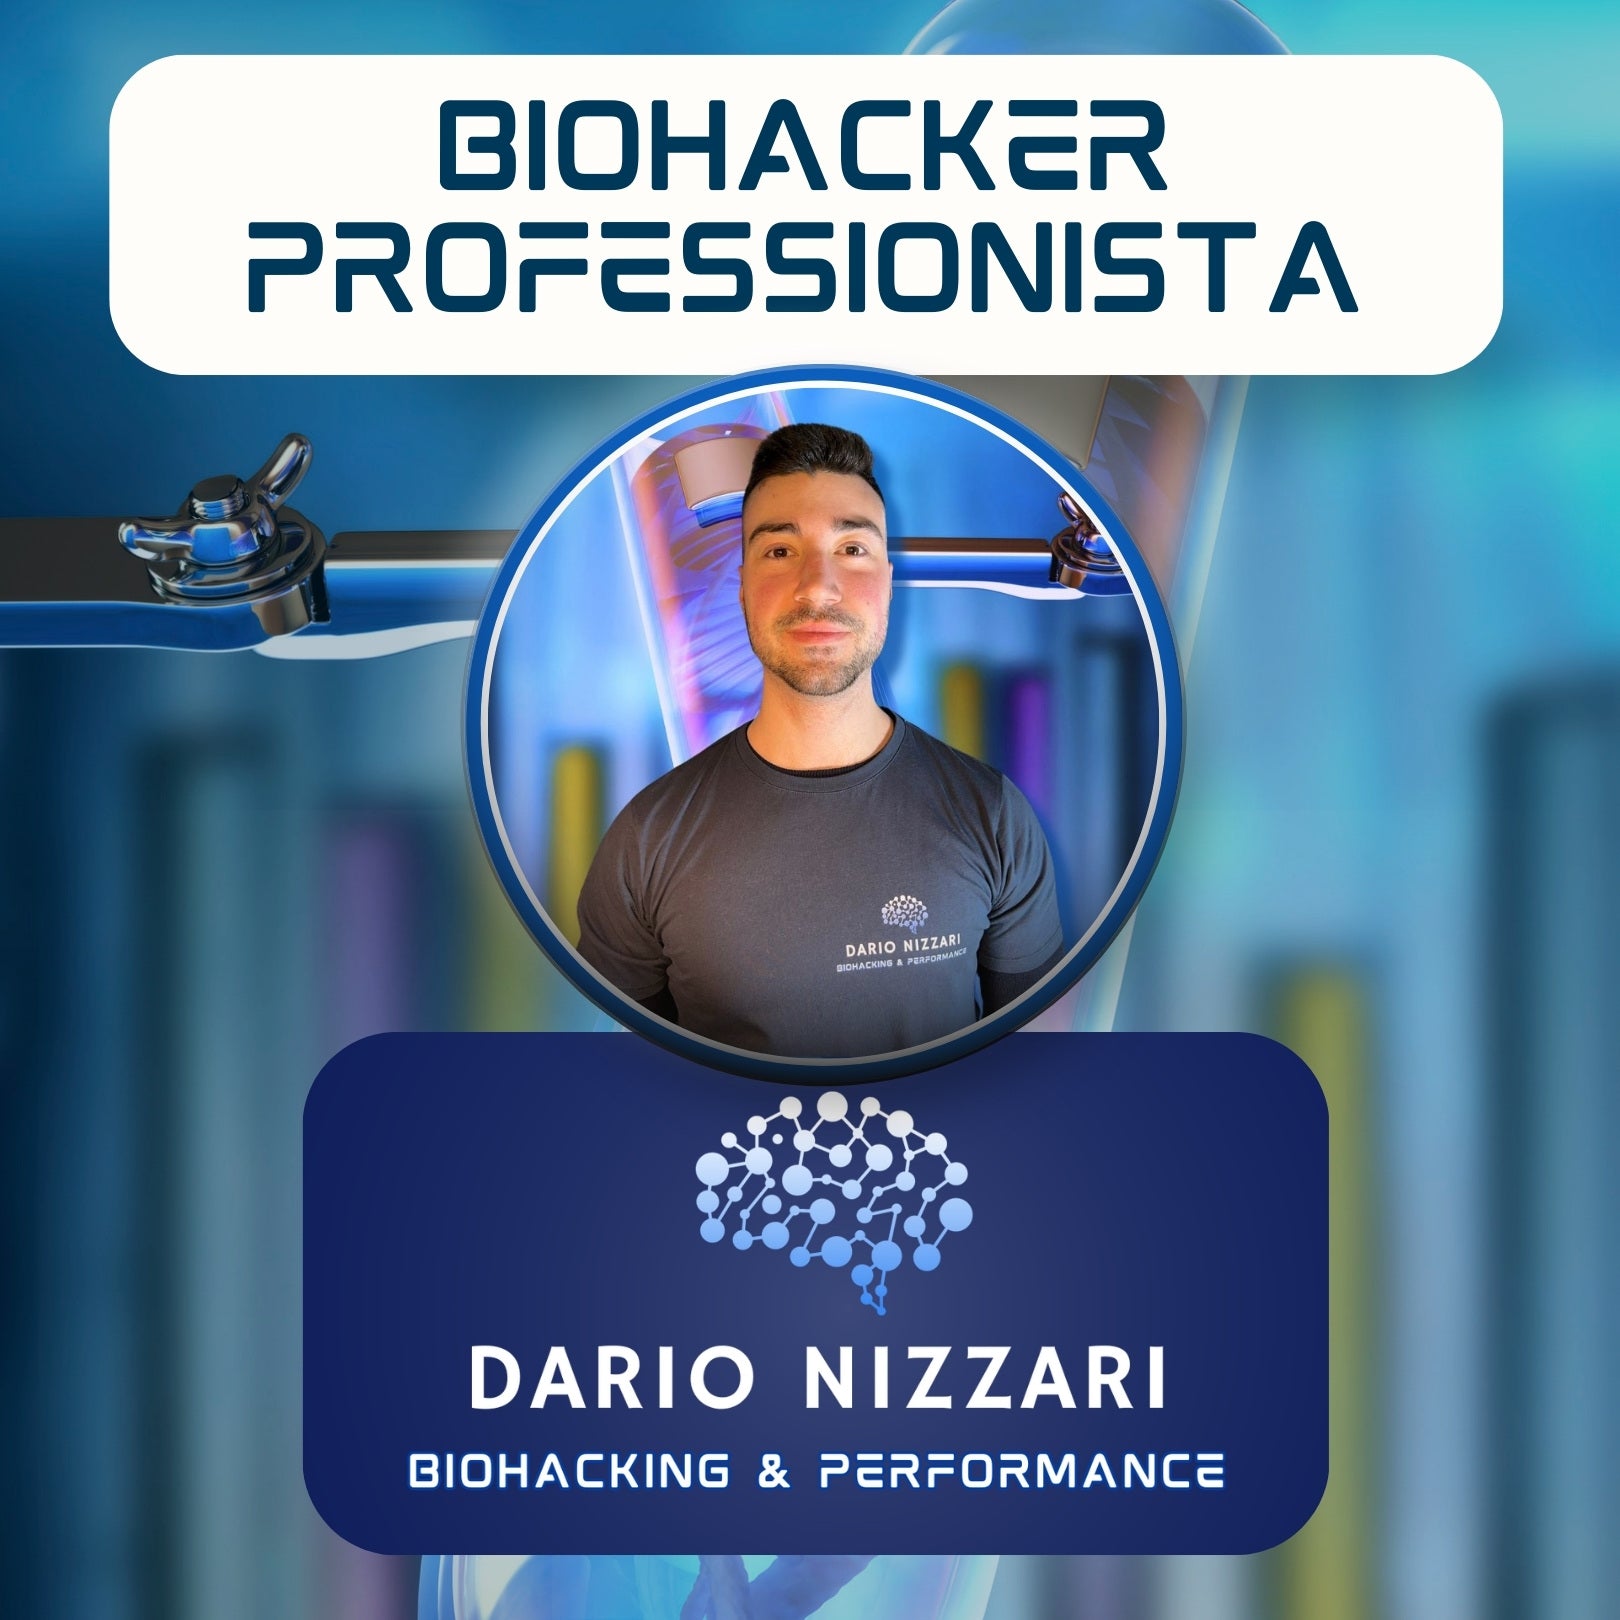 Chi è il professionista di Biohacking?